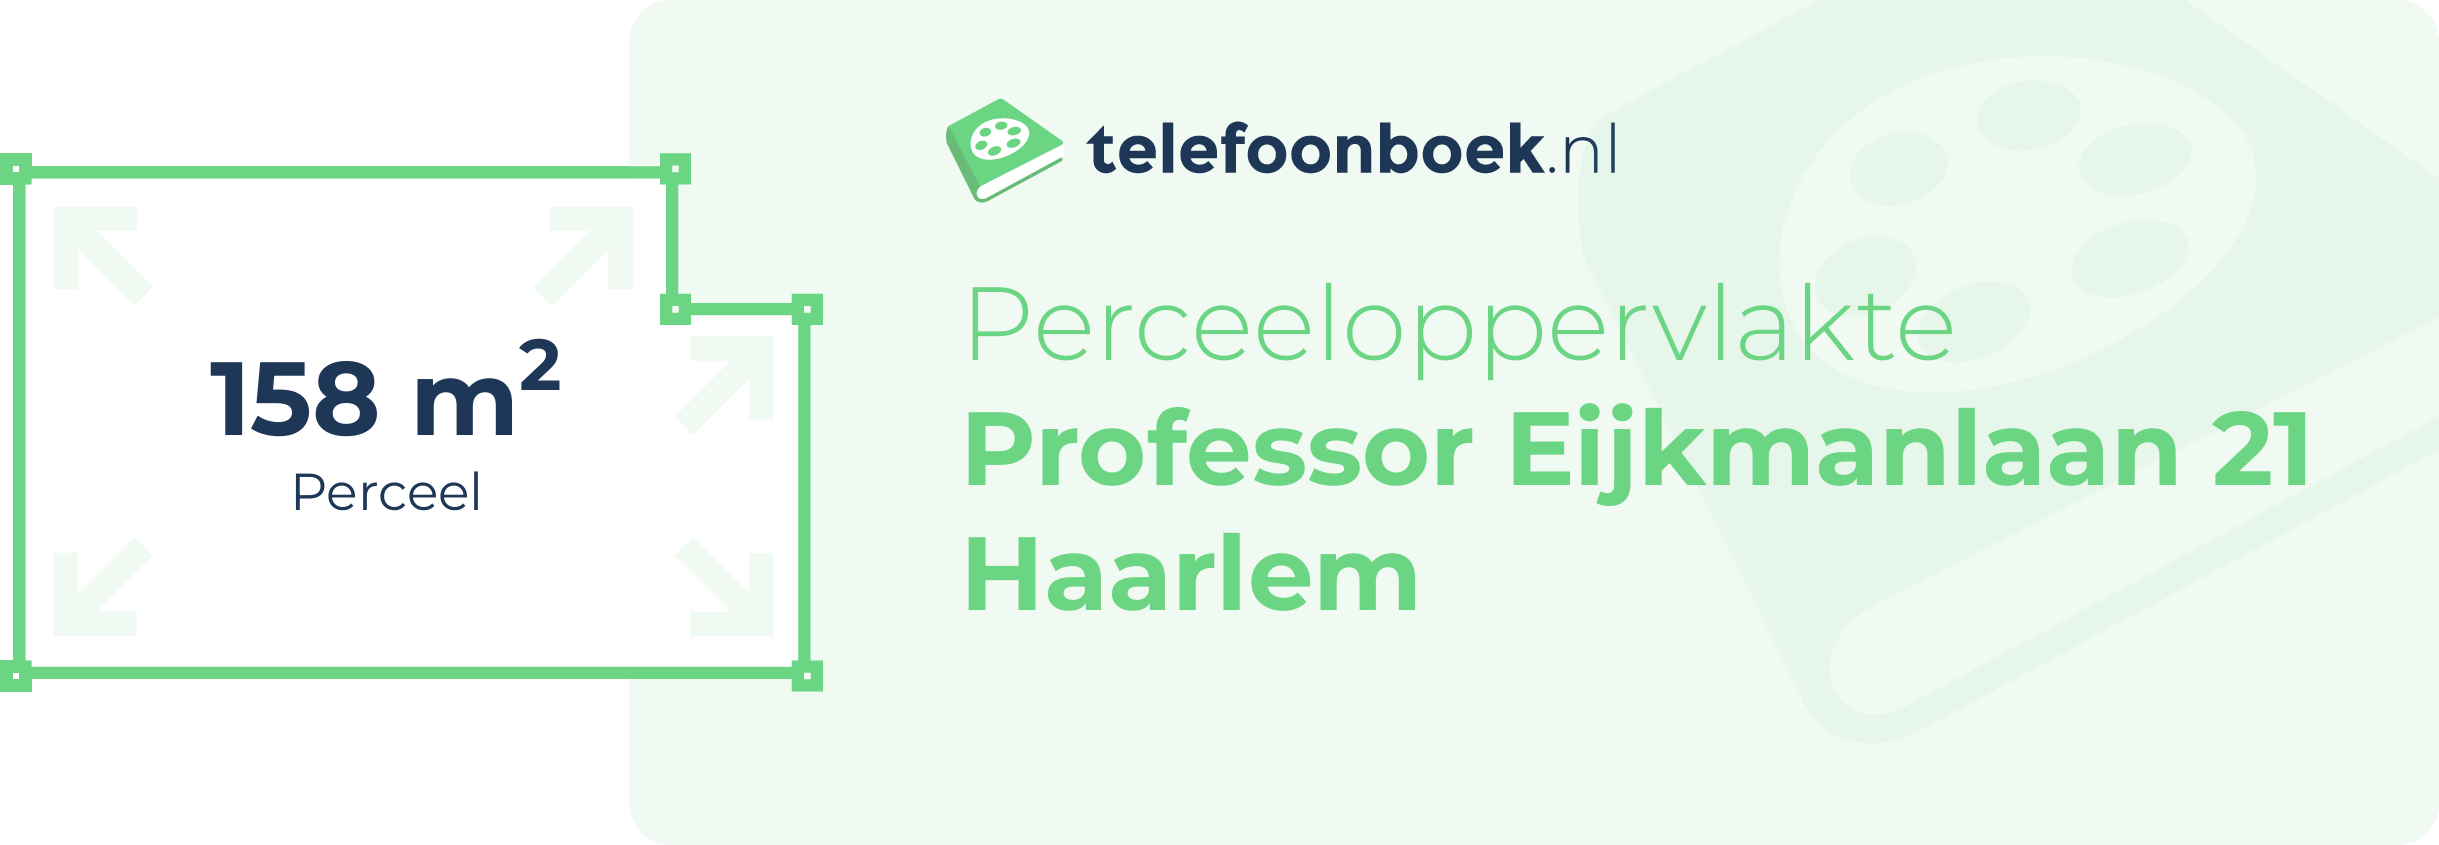 Perceeloppervlakte Professor Eijkmanlaan 21 Haarlem